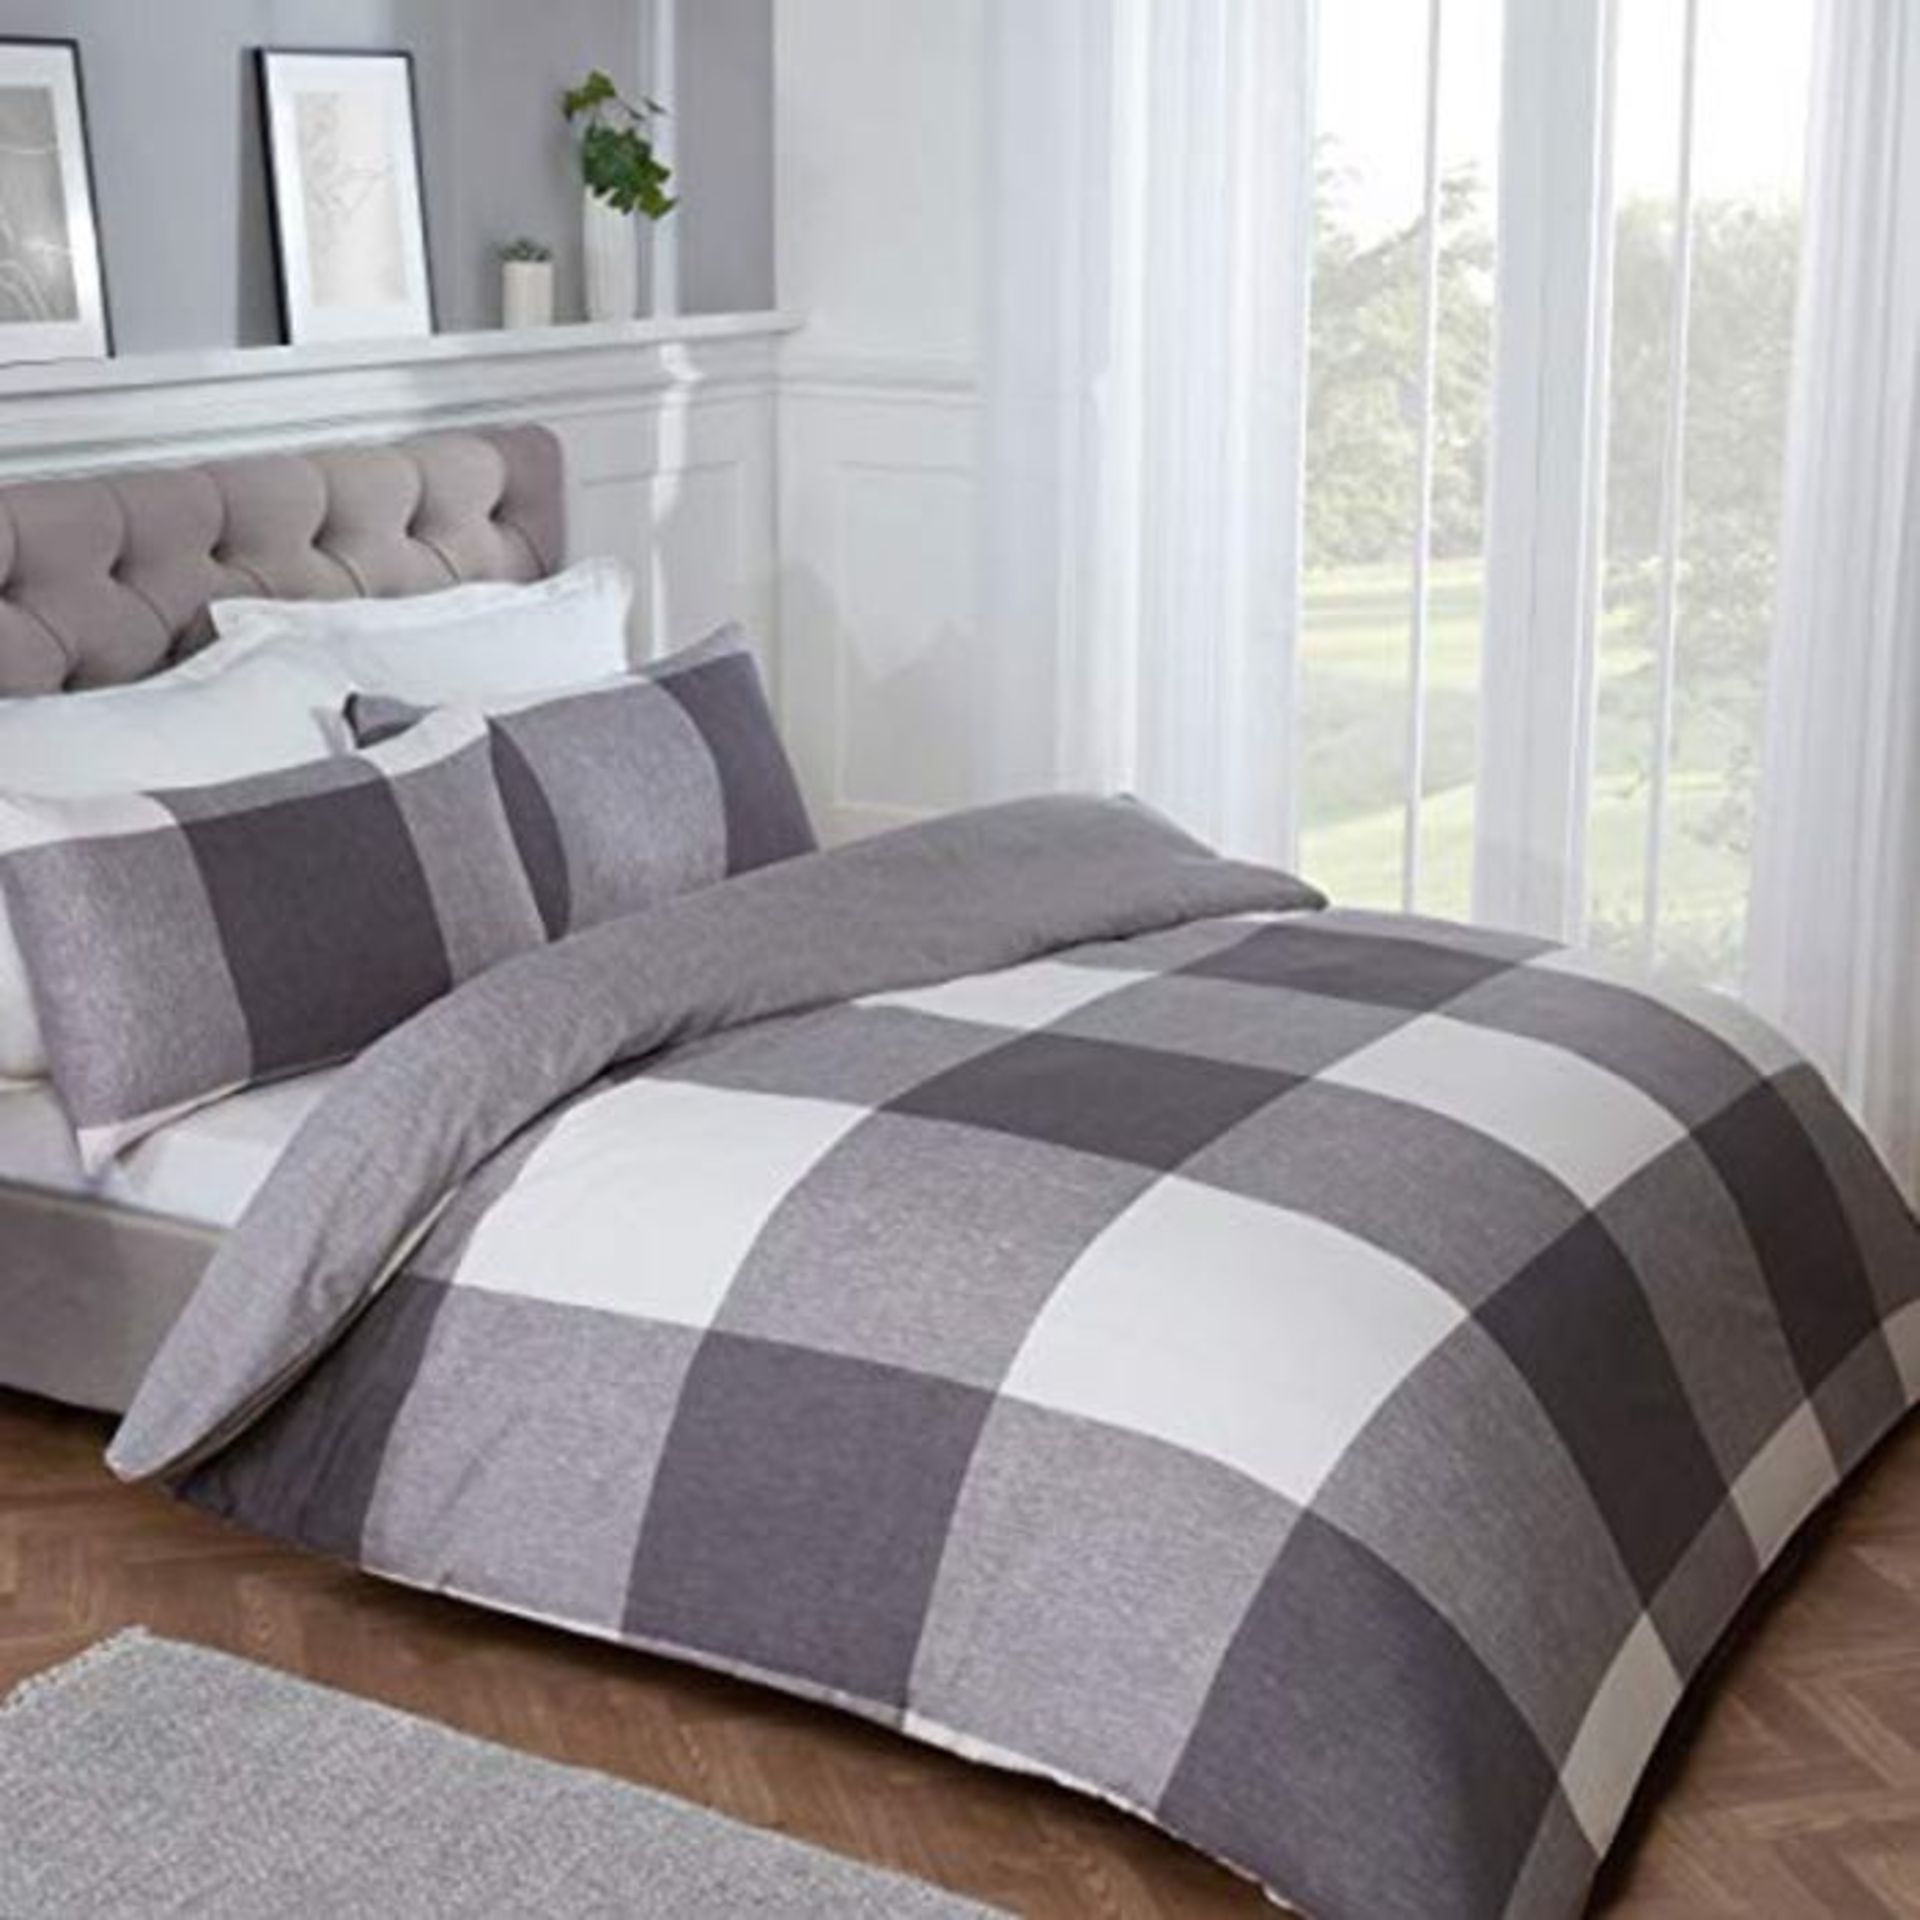 Sleepdown Gingham Check Charcoal Grey Plain Reverse Soft Easy Care Duvet Cover Quilt B